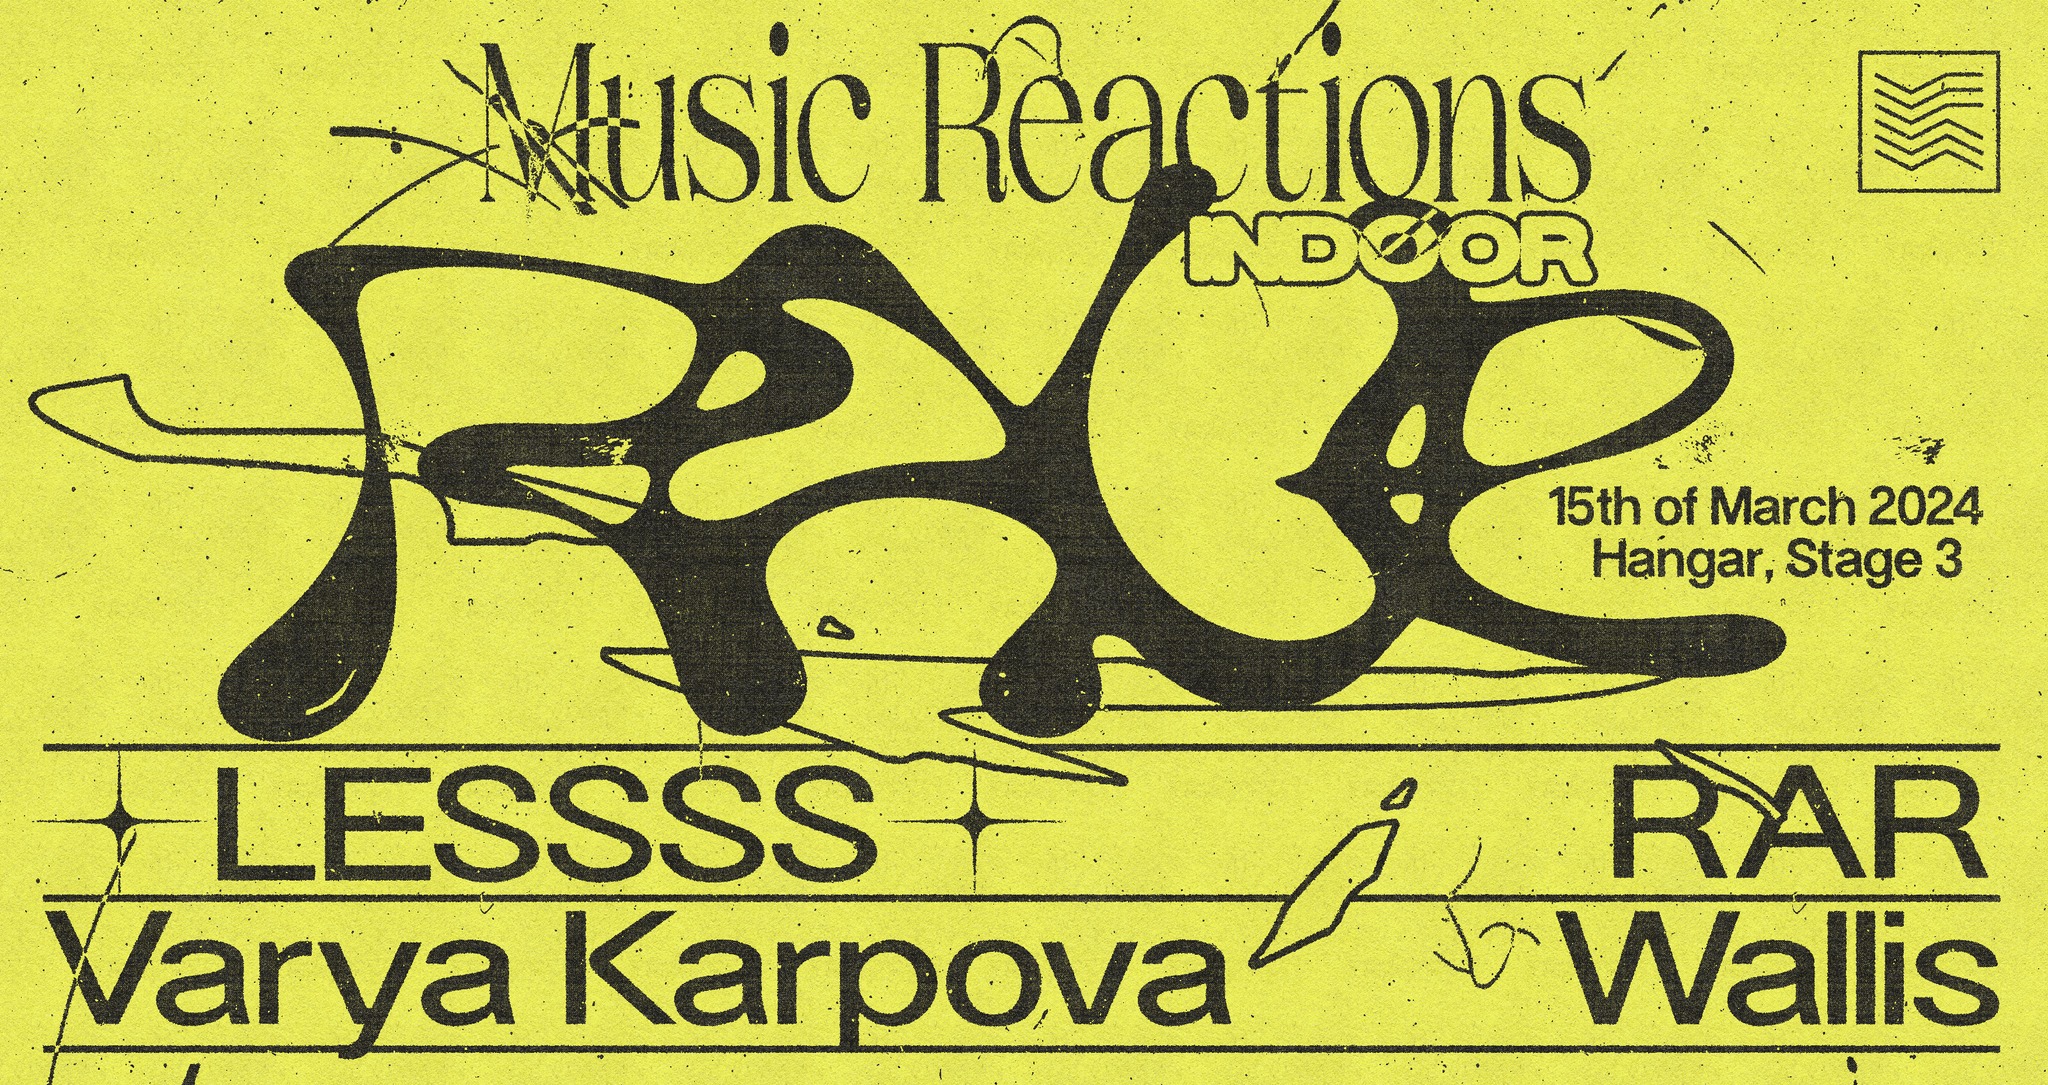 Music Reactions Indoor Rave 15.03.2024. Hangar